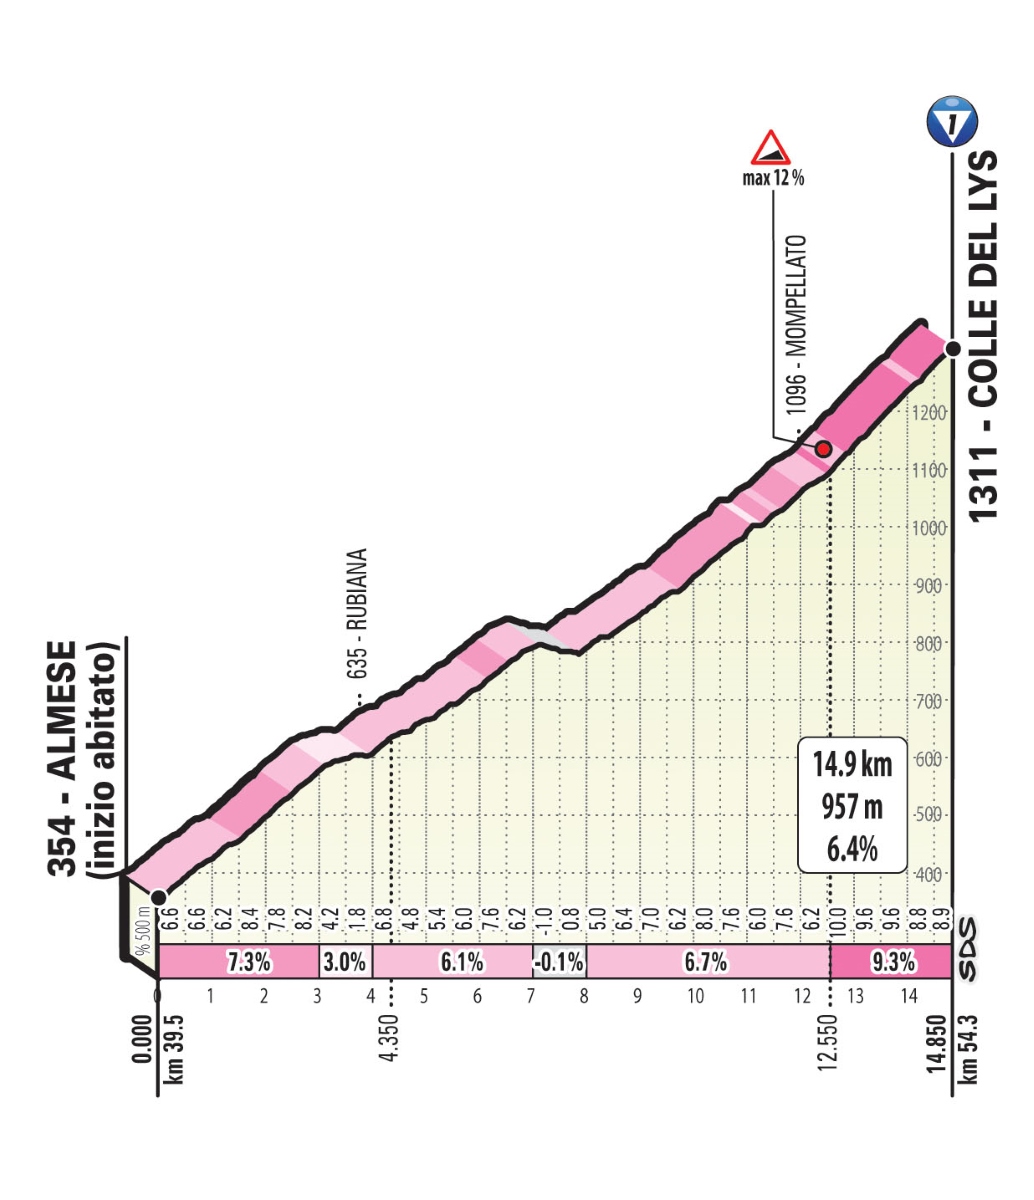 Giro-ditalia-2019-Tappa-13-Salita-Lys.jp